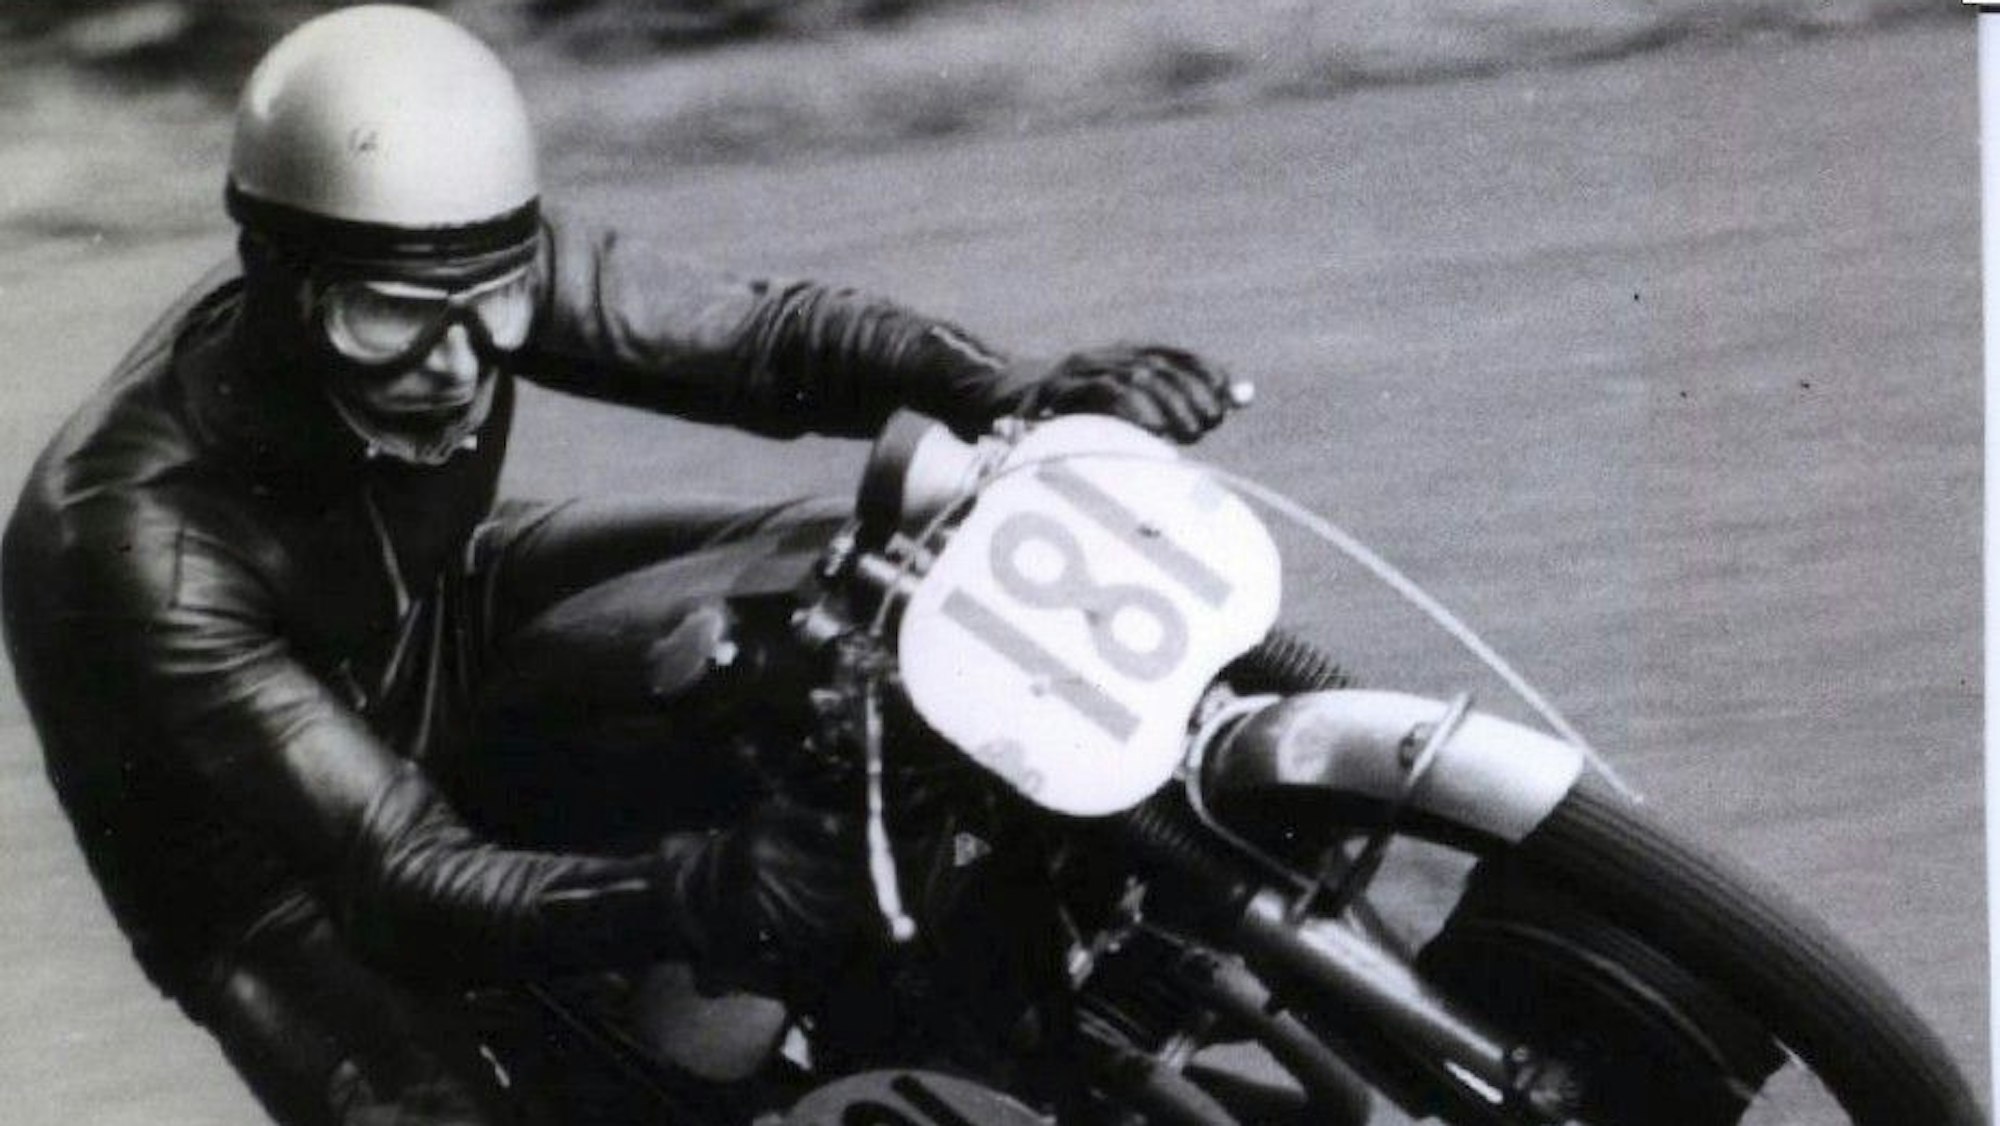 Der Rennfahrer legt sich mit seinem Motorrad in die Kurve.